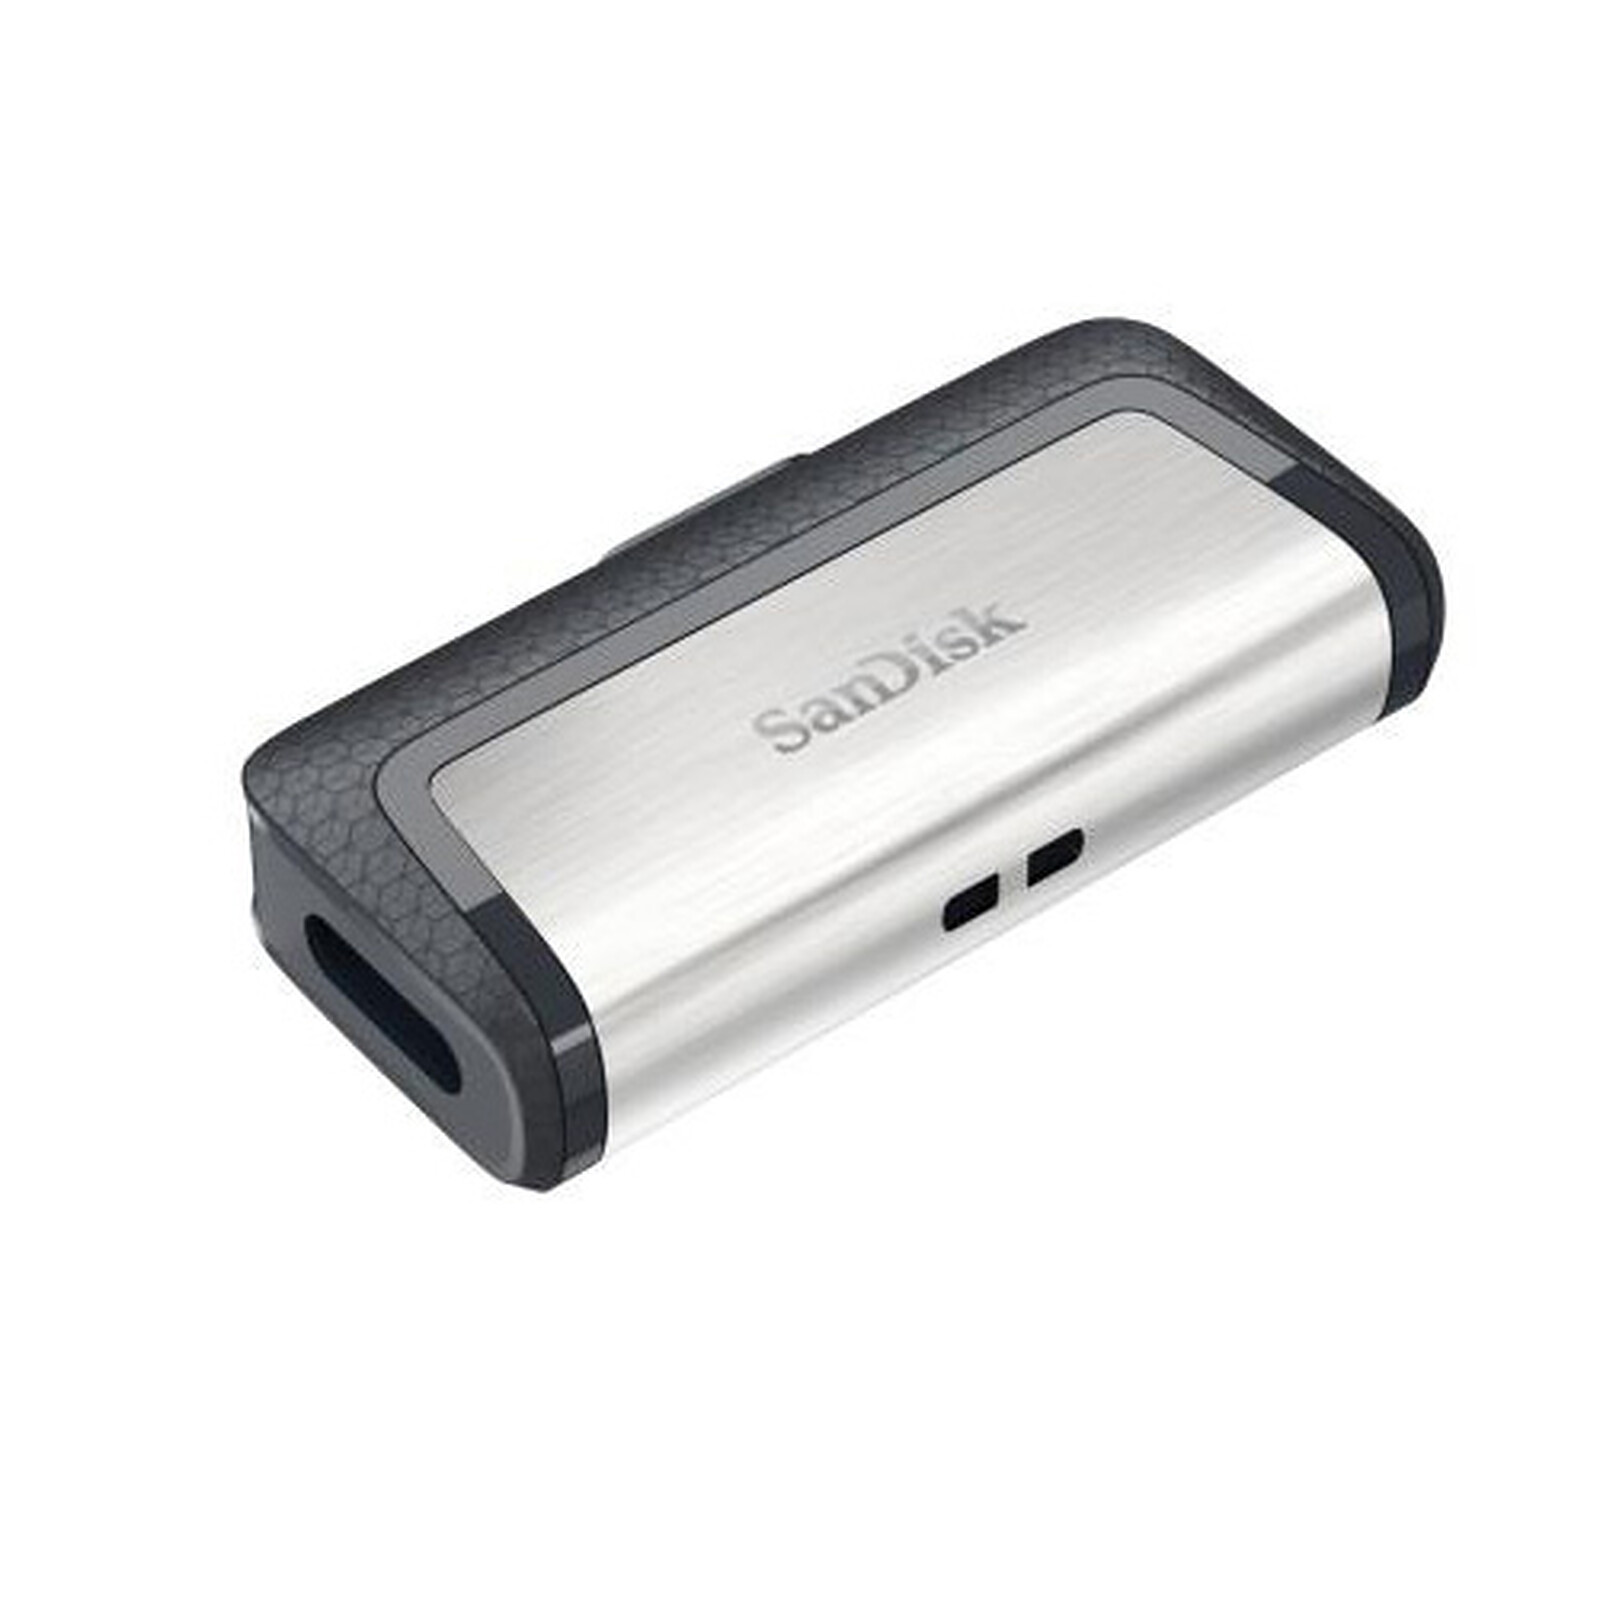 SanDisk Extreme PLUS SDXC UHS-I 128 Go - Carte mémoire - LDLC